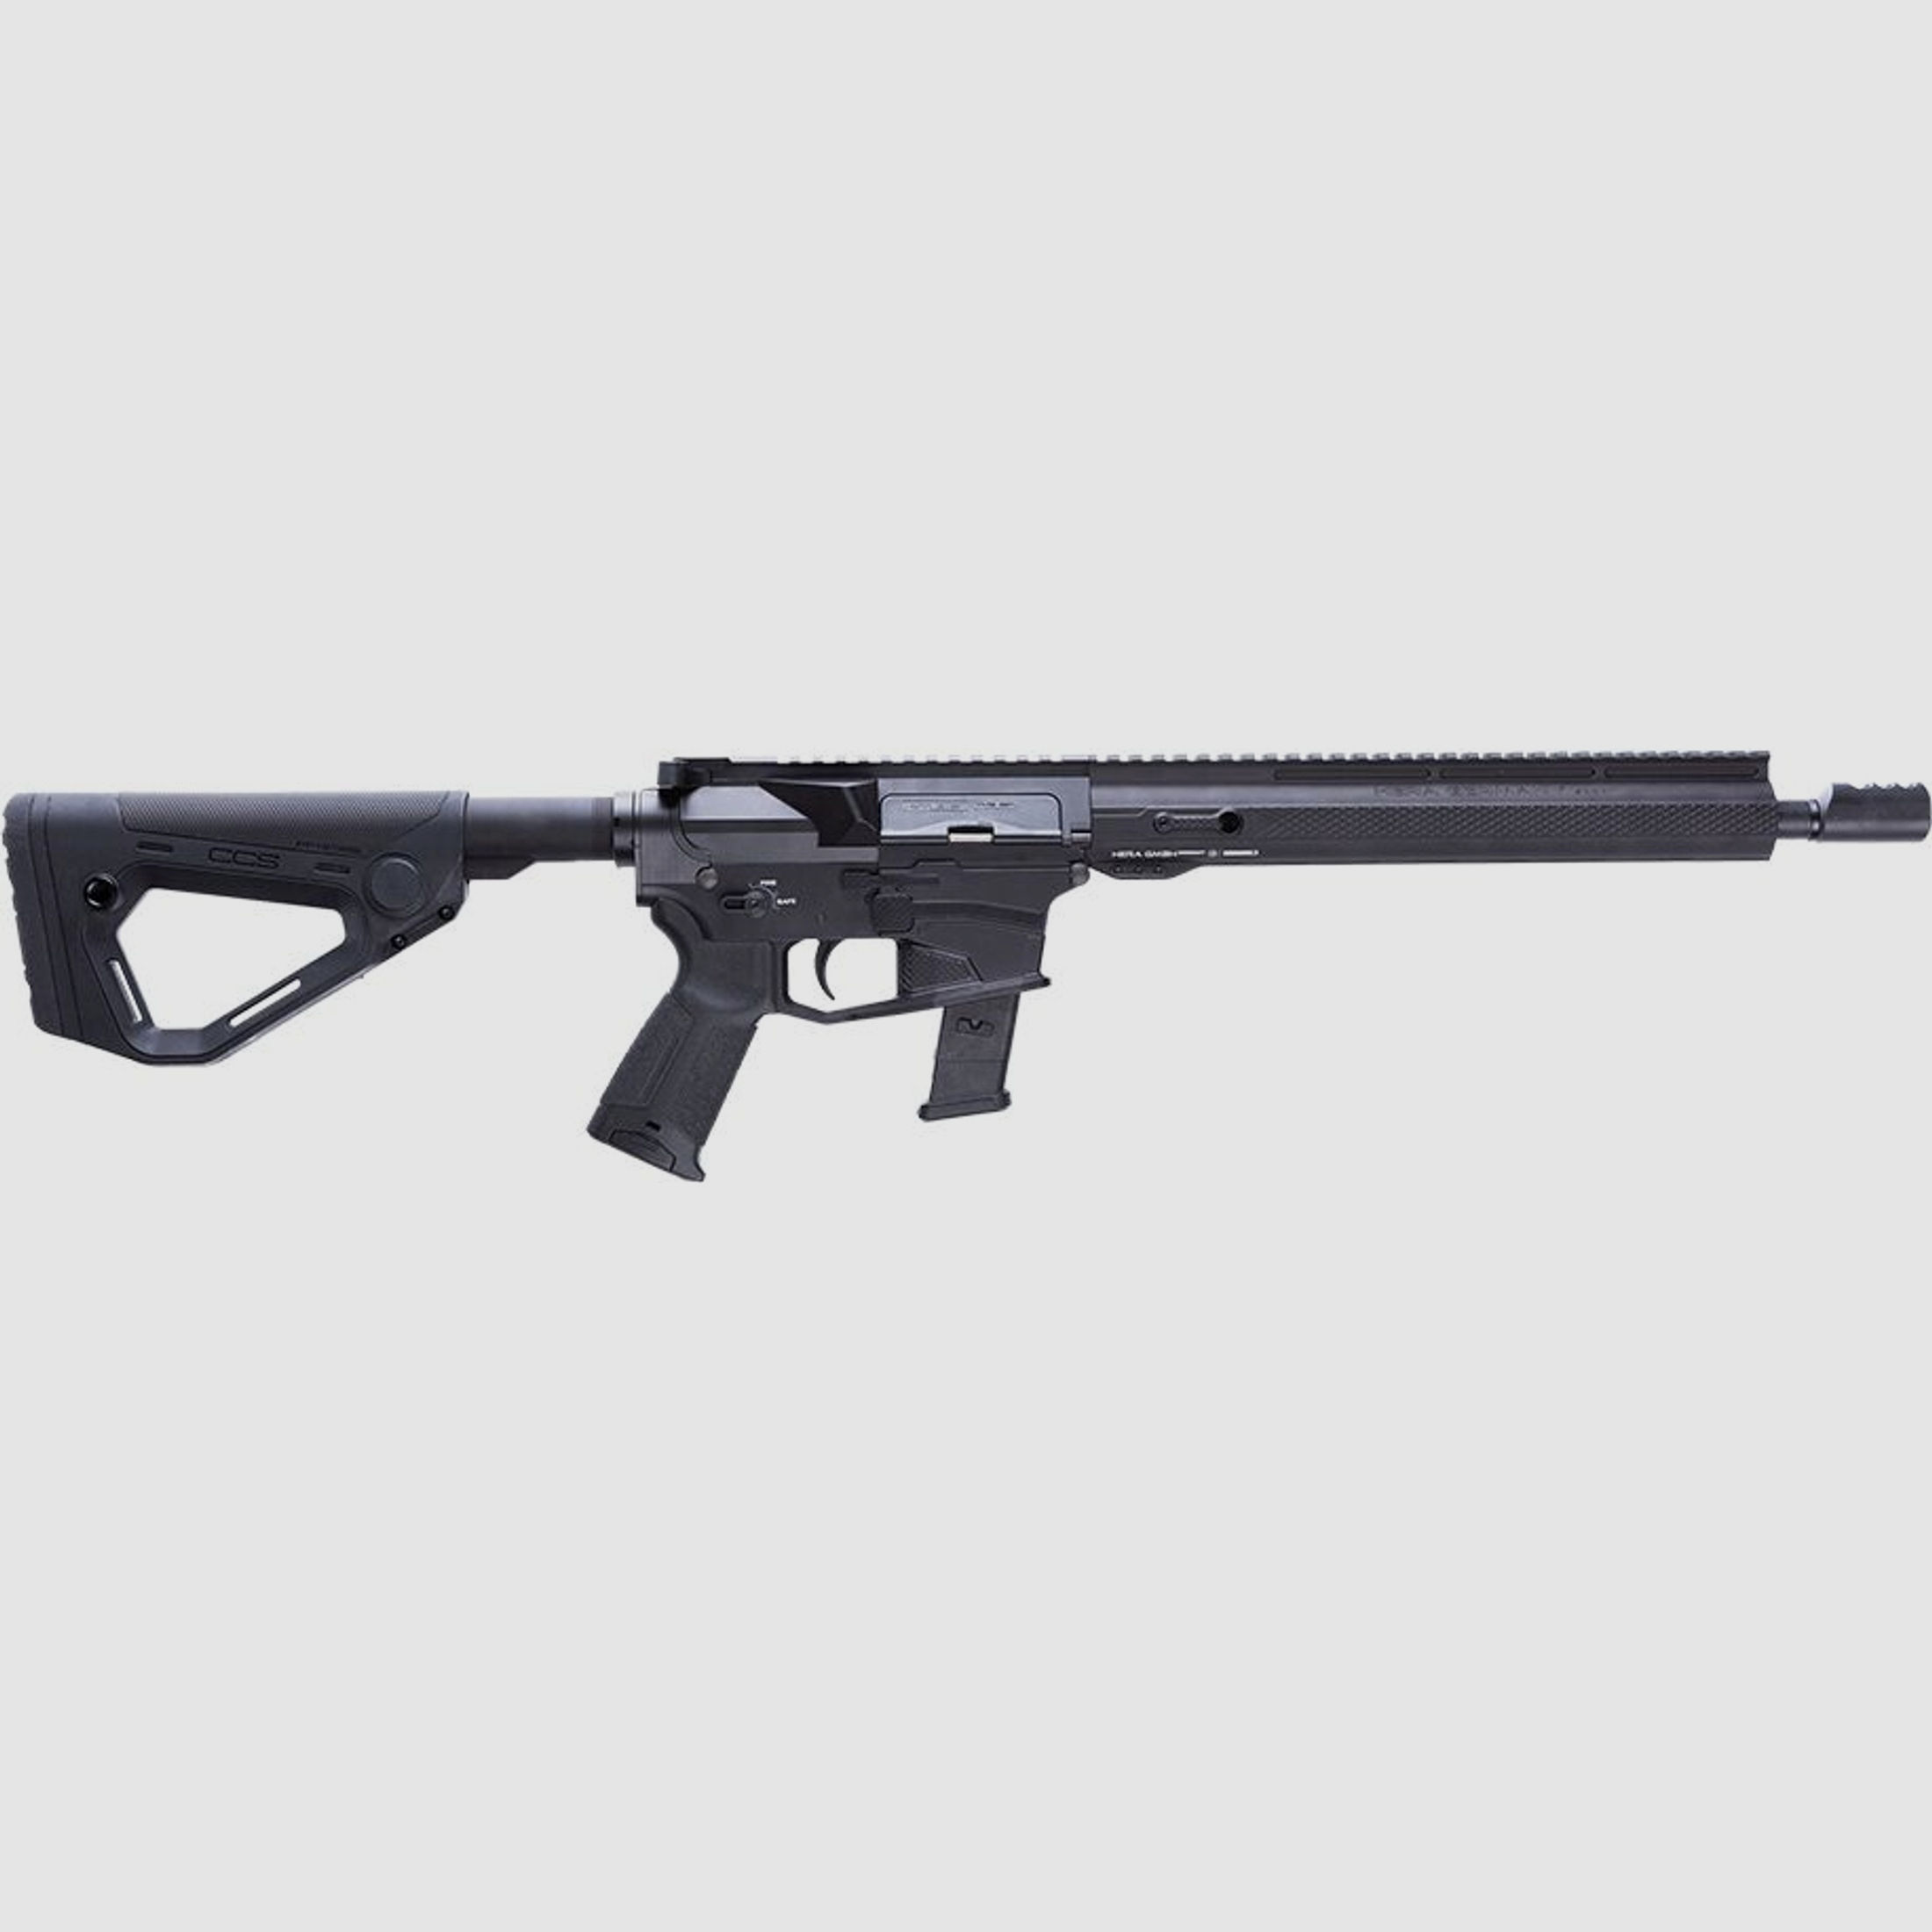 H.E.R.A - Arms	 Hera Arms The 9er Sport 2020 IPSC - 9mm Luger Lauflänge 13,5" (Glock-Lower) - CCS-Schaft